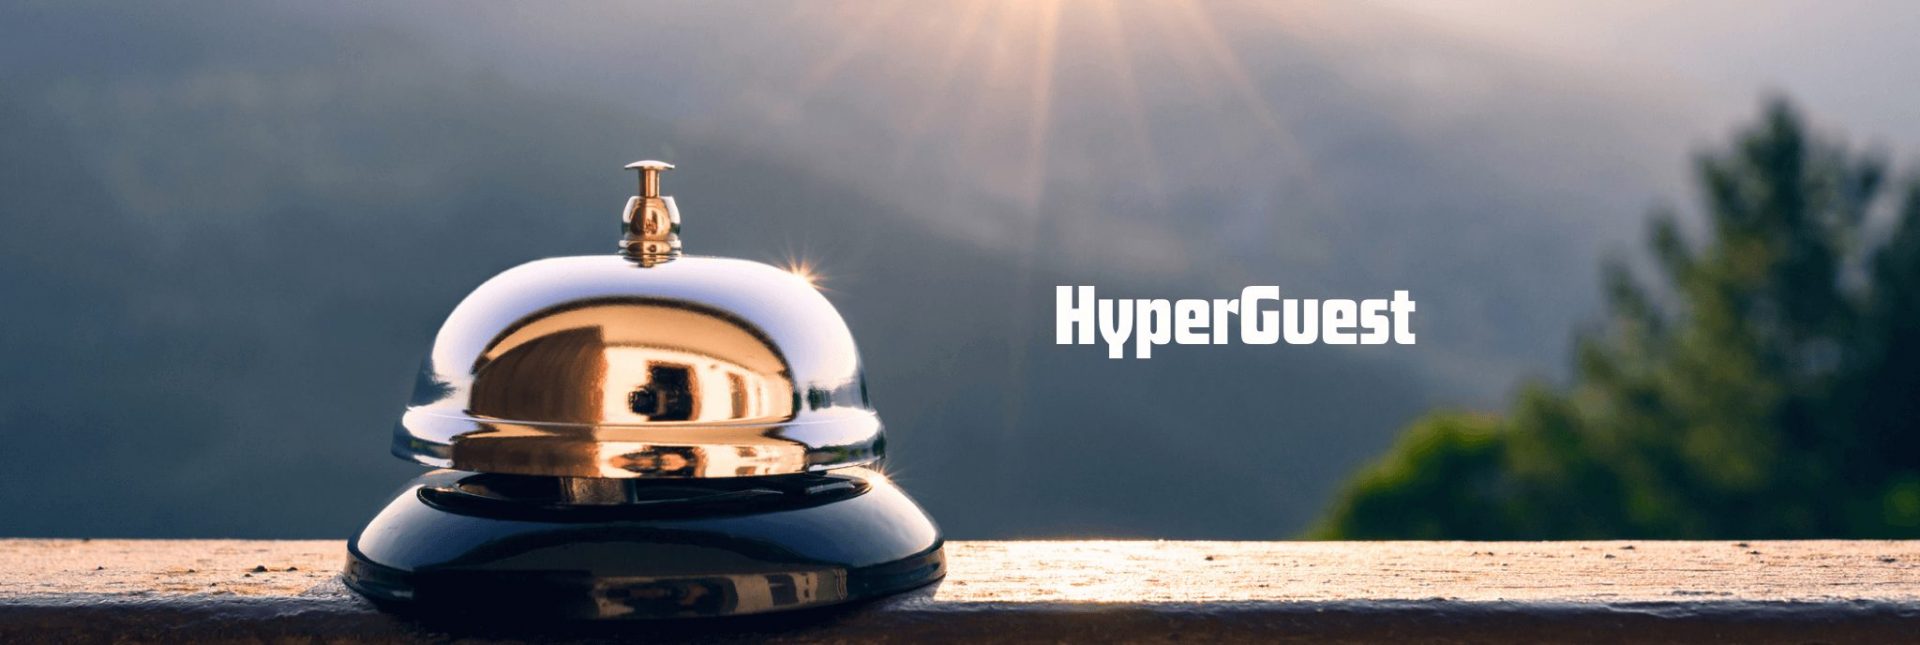 HyperGuest